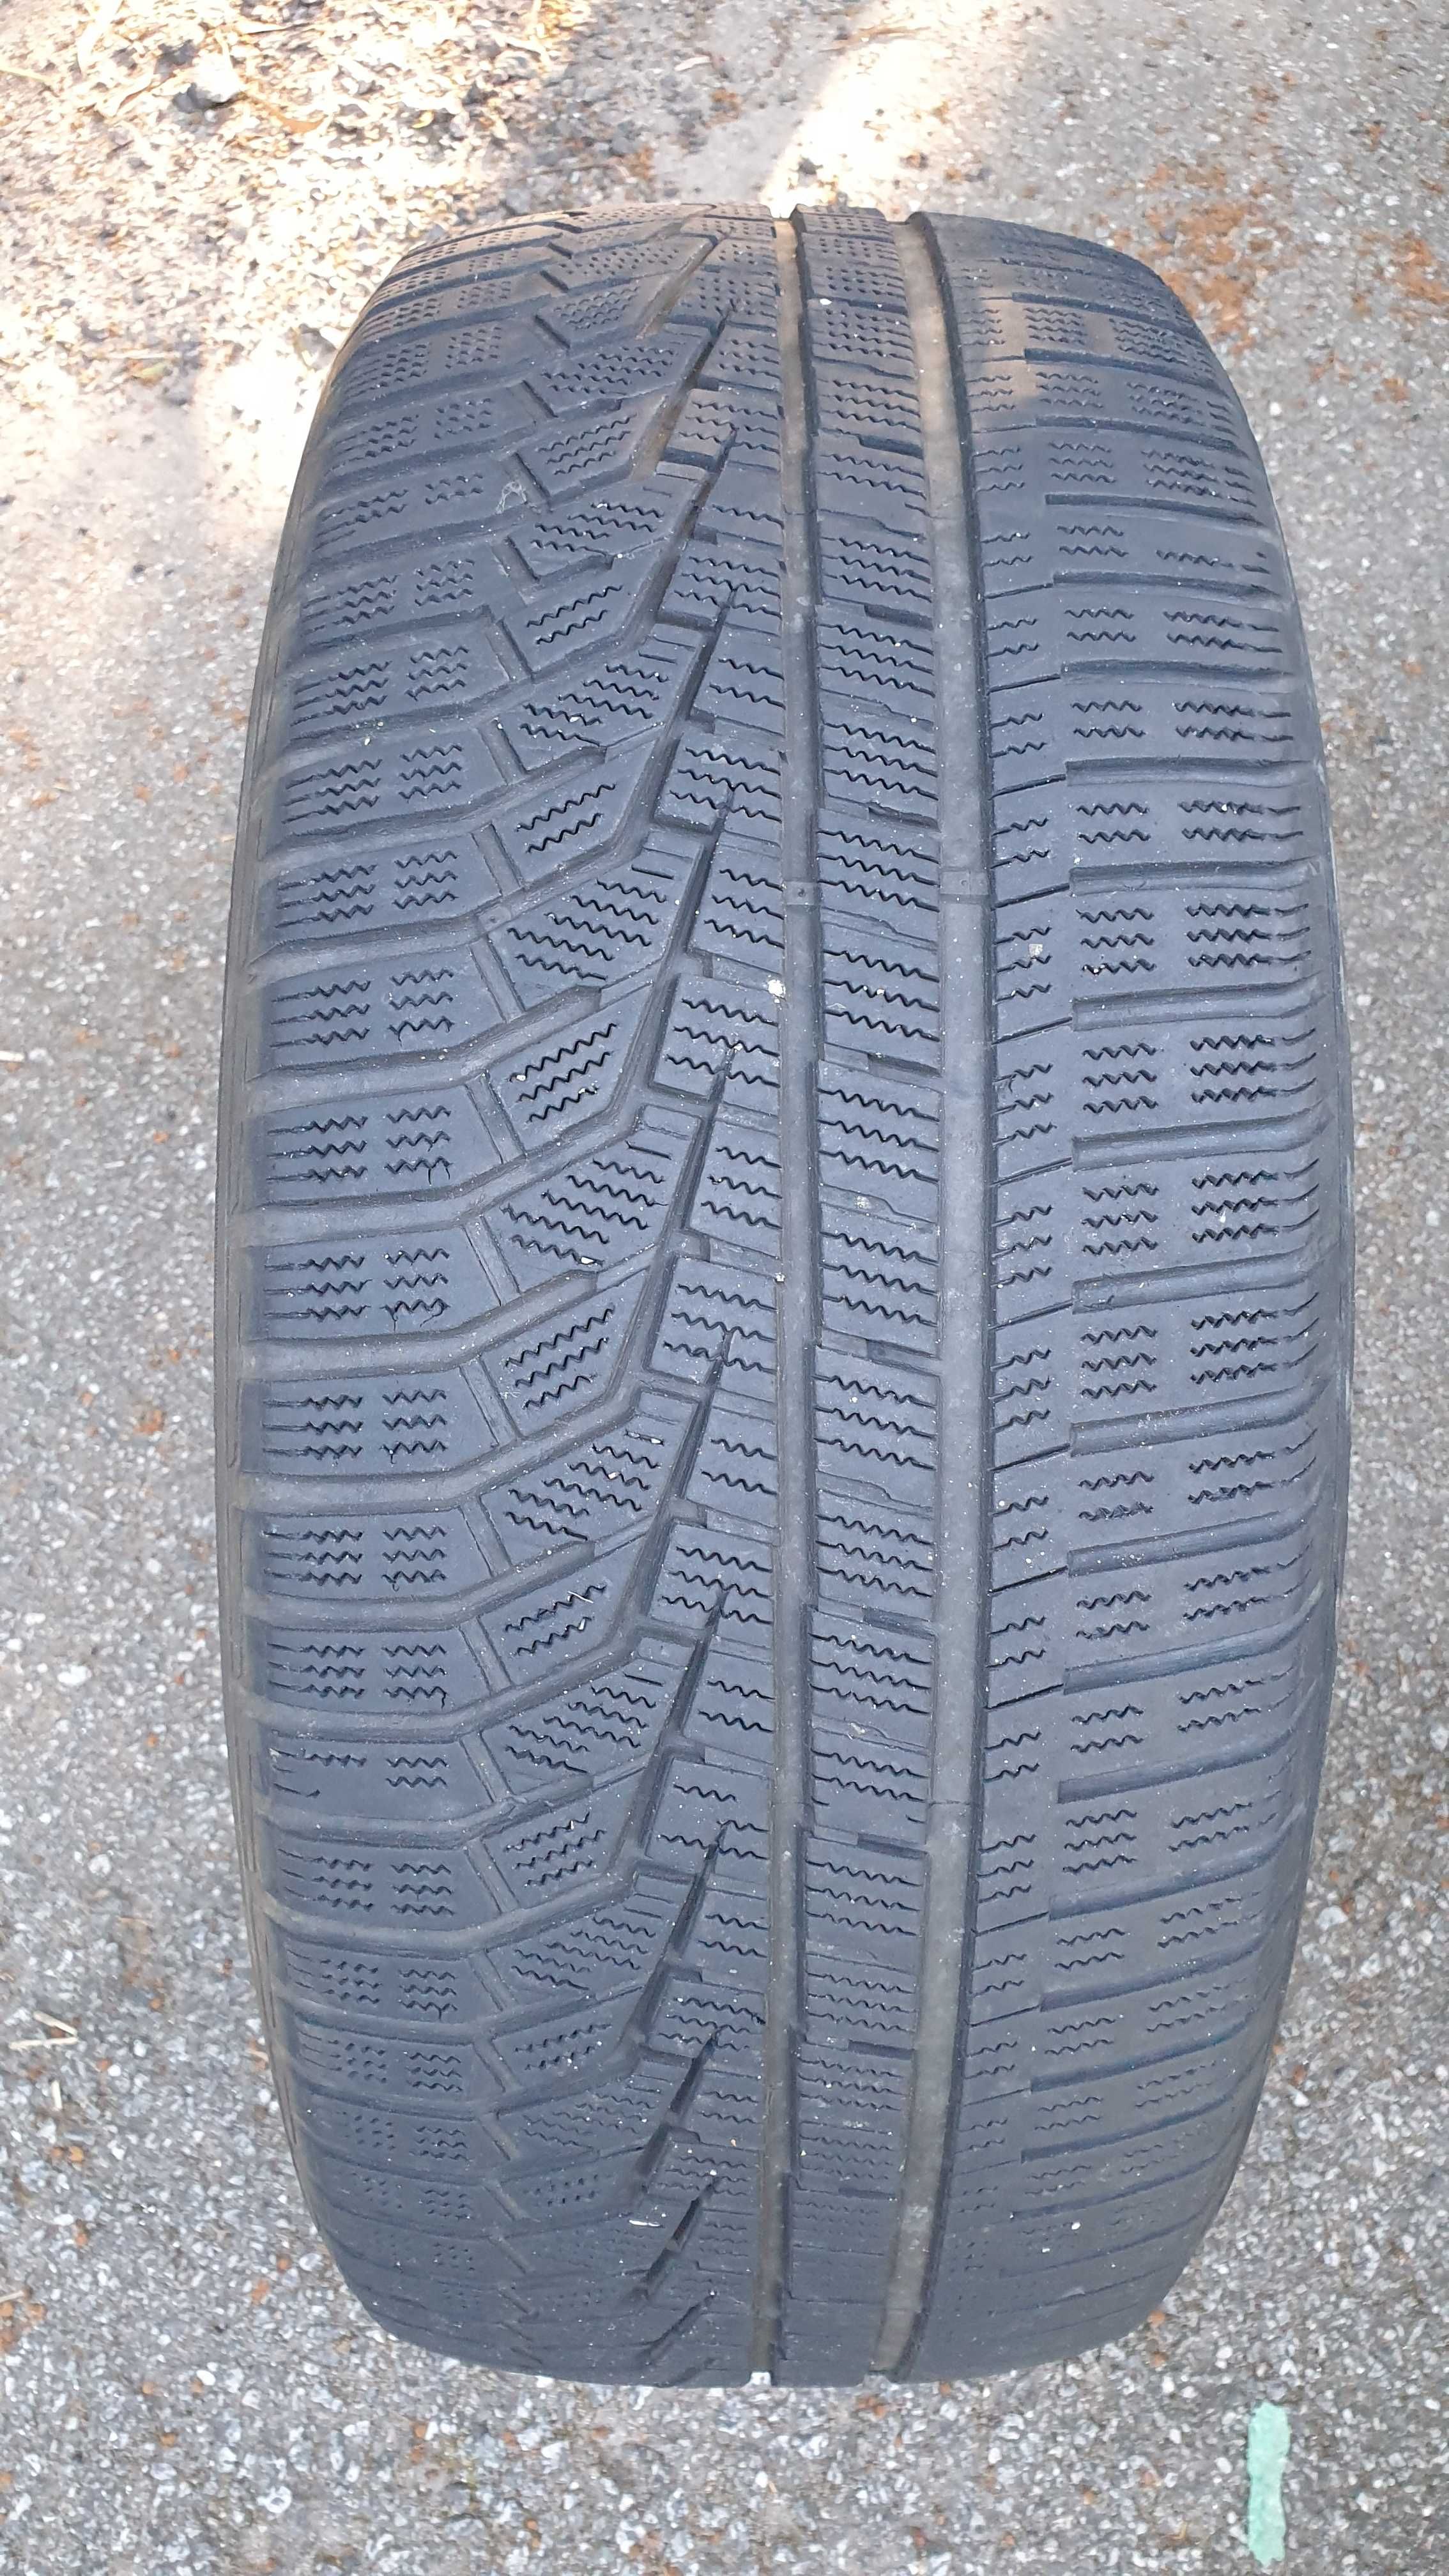 Preço do conjunto de 2 pneus Hankook 255/55R19 usados